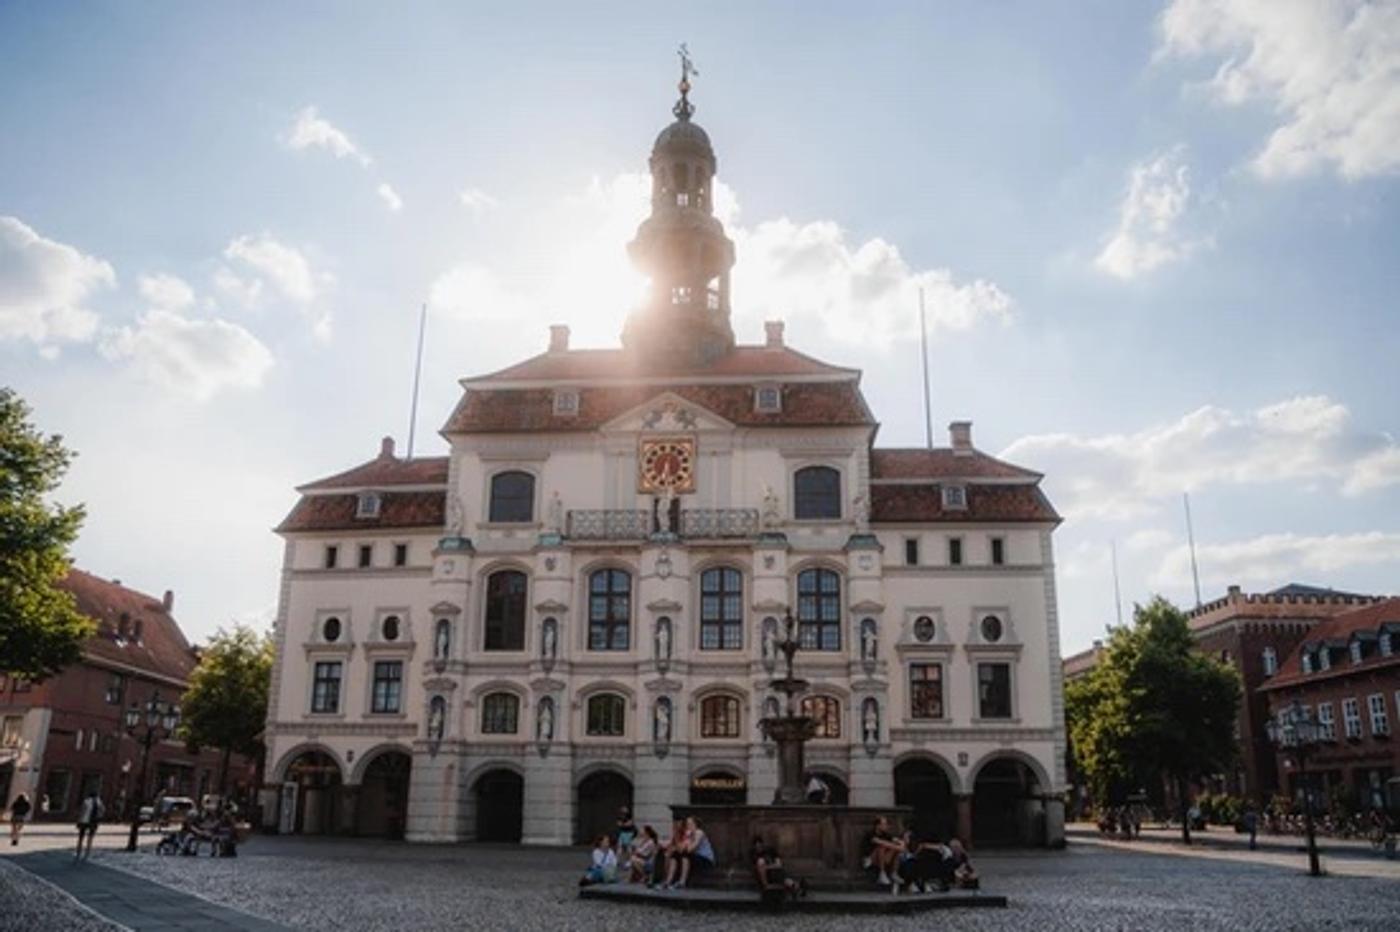 Kühle Schatzkammer: Entdecke das altehrwürdige Rathaus in Lüneburg!